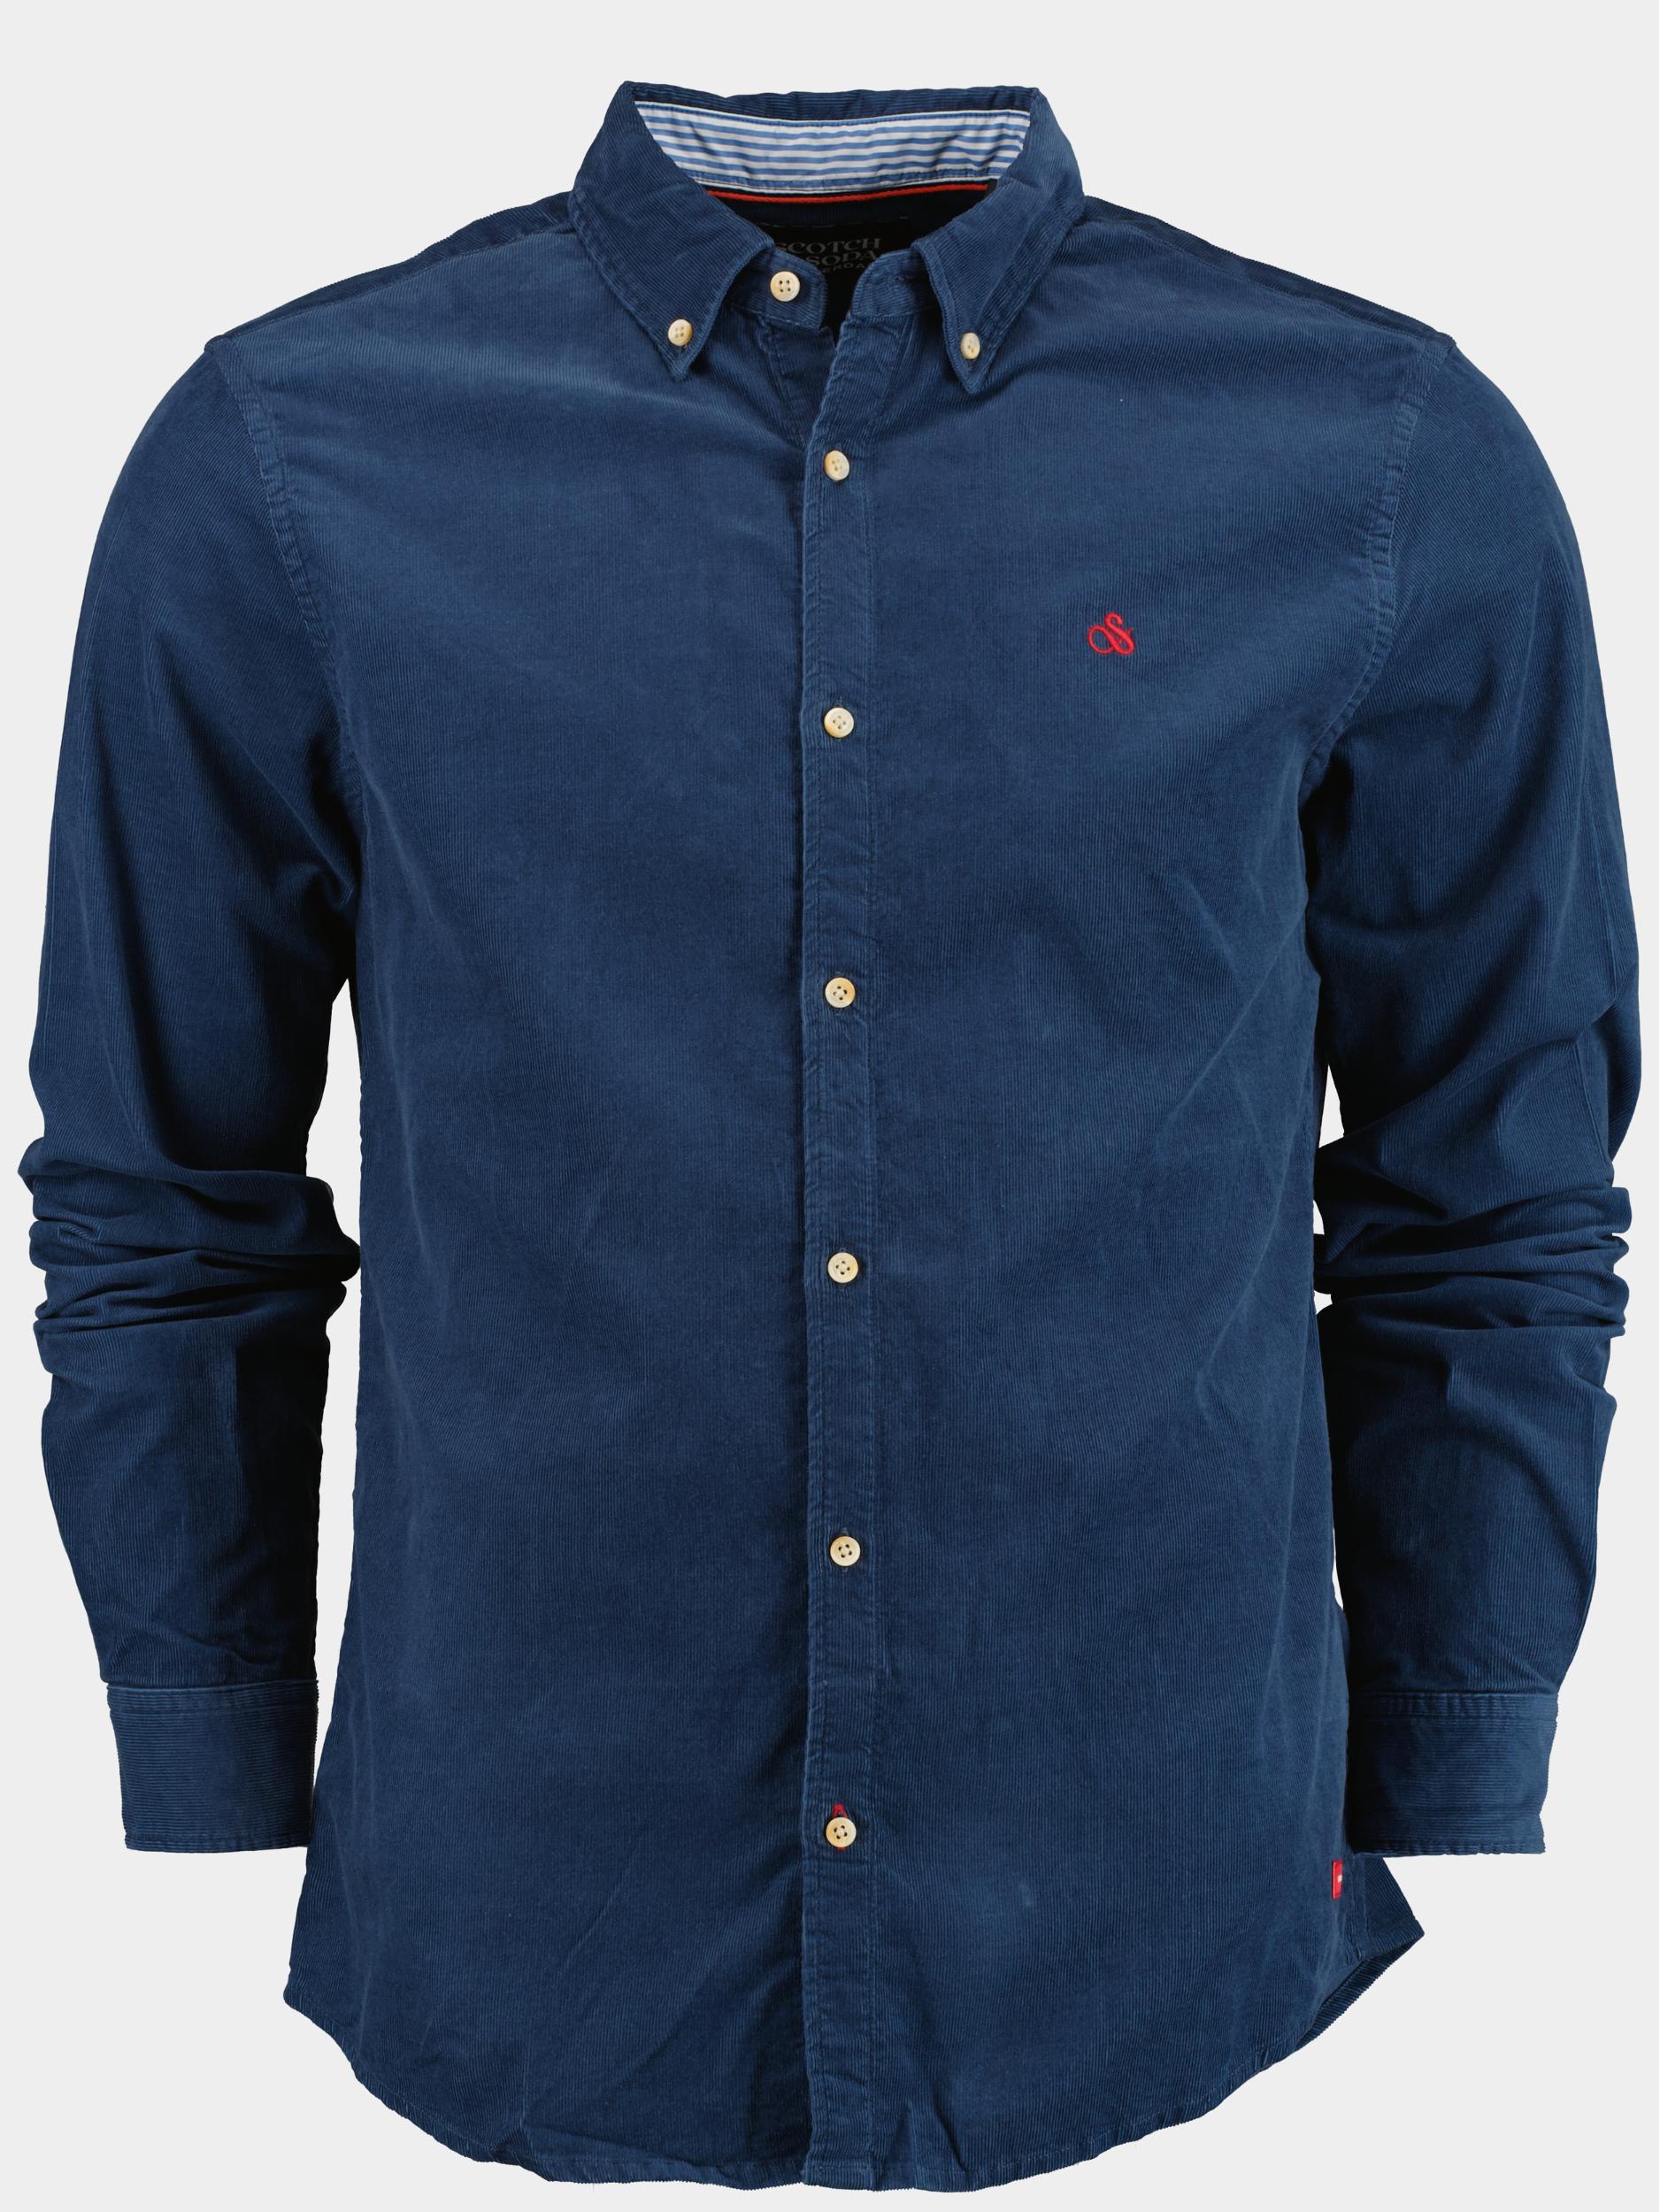 Scotch & Soda Casual hemd lange mouw Blauw Fine corduroy shirt - slim fit 173080/0807